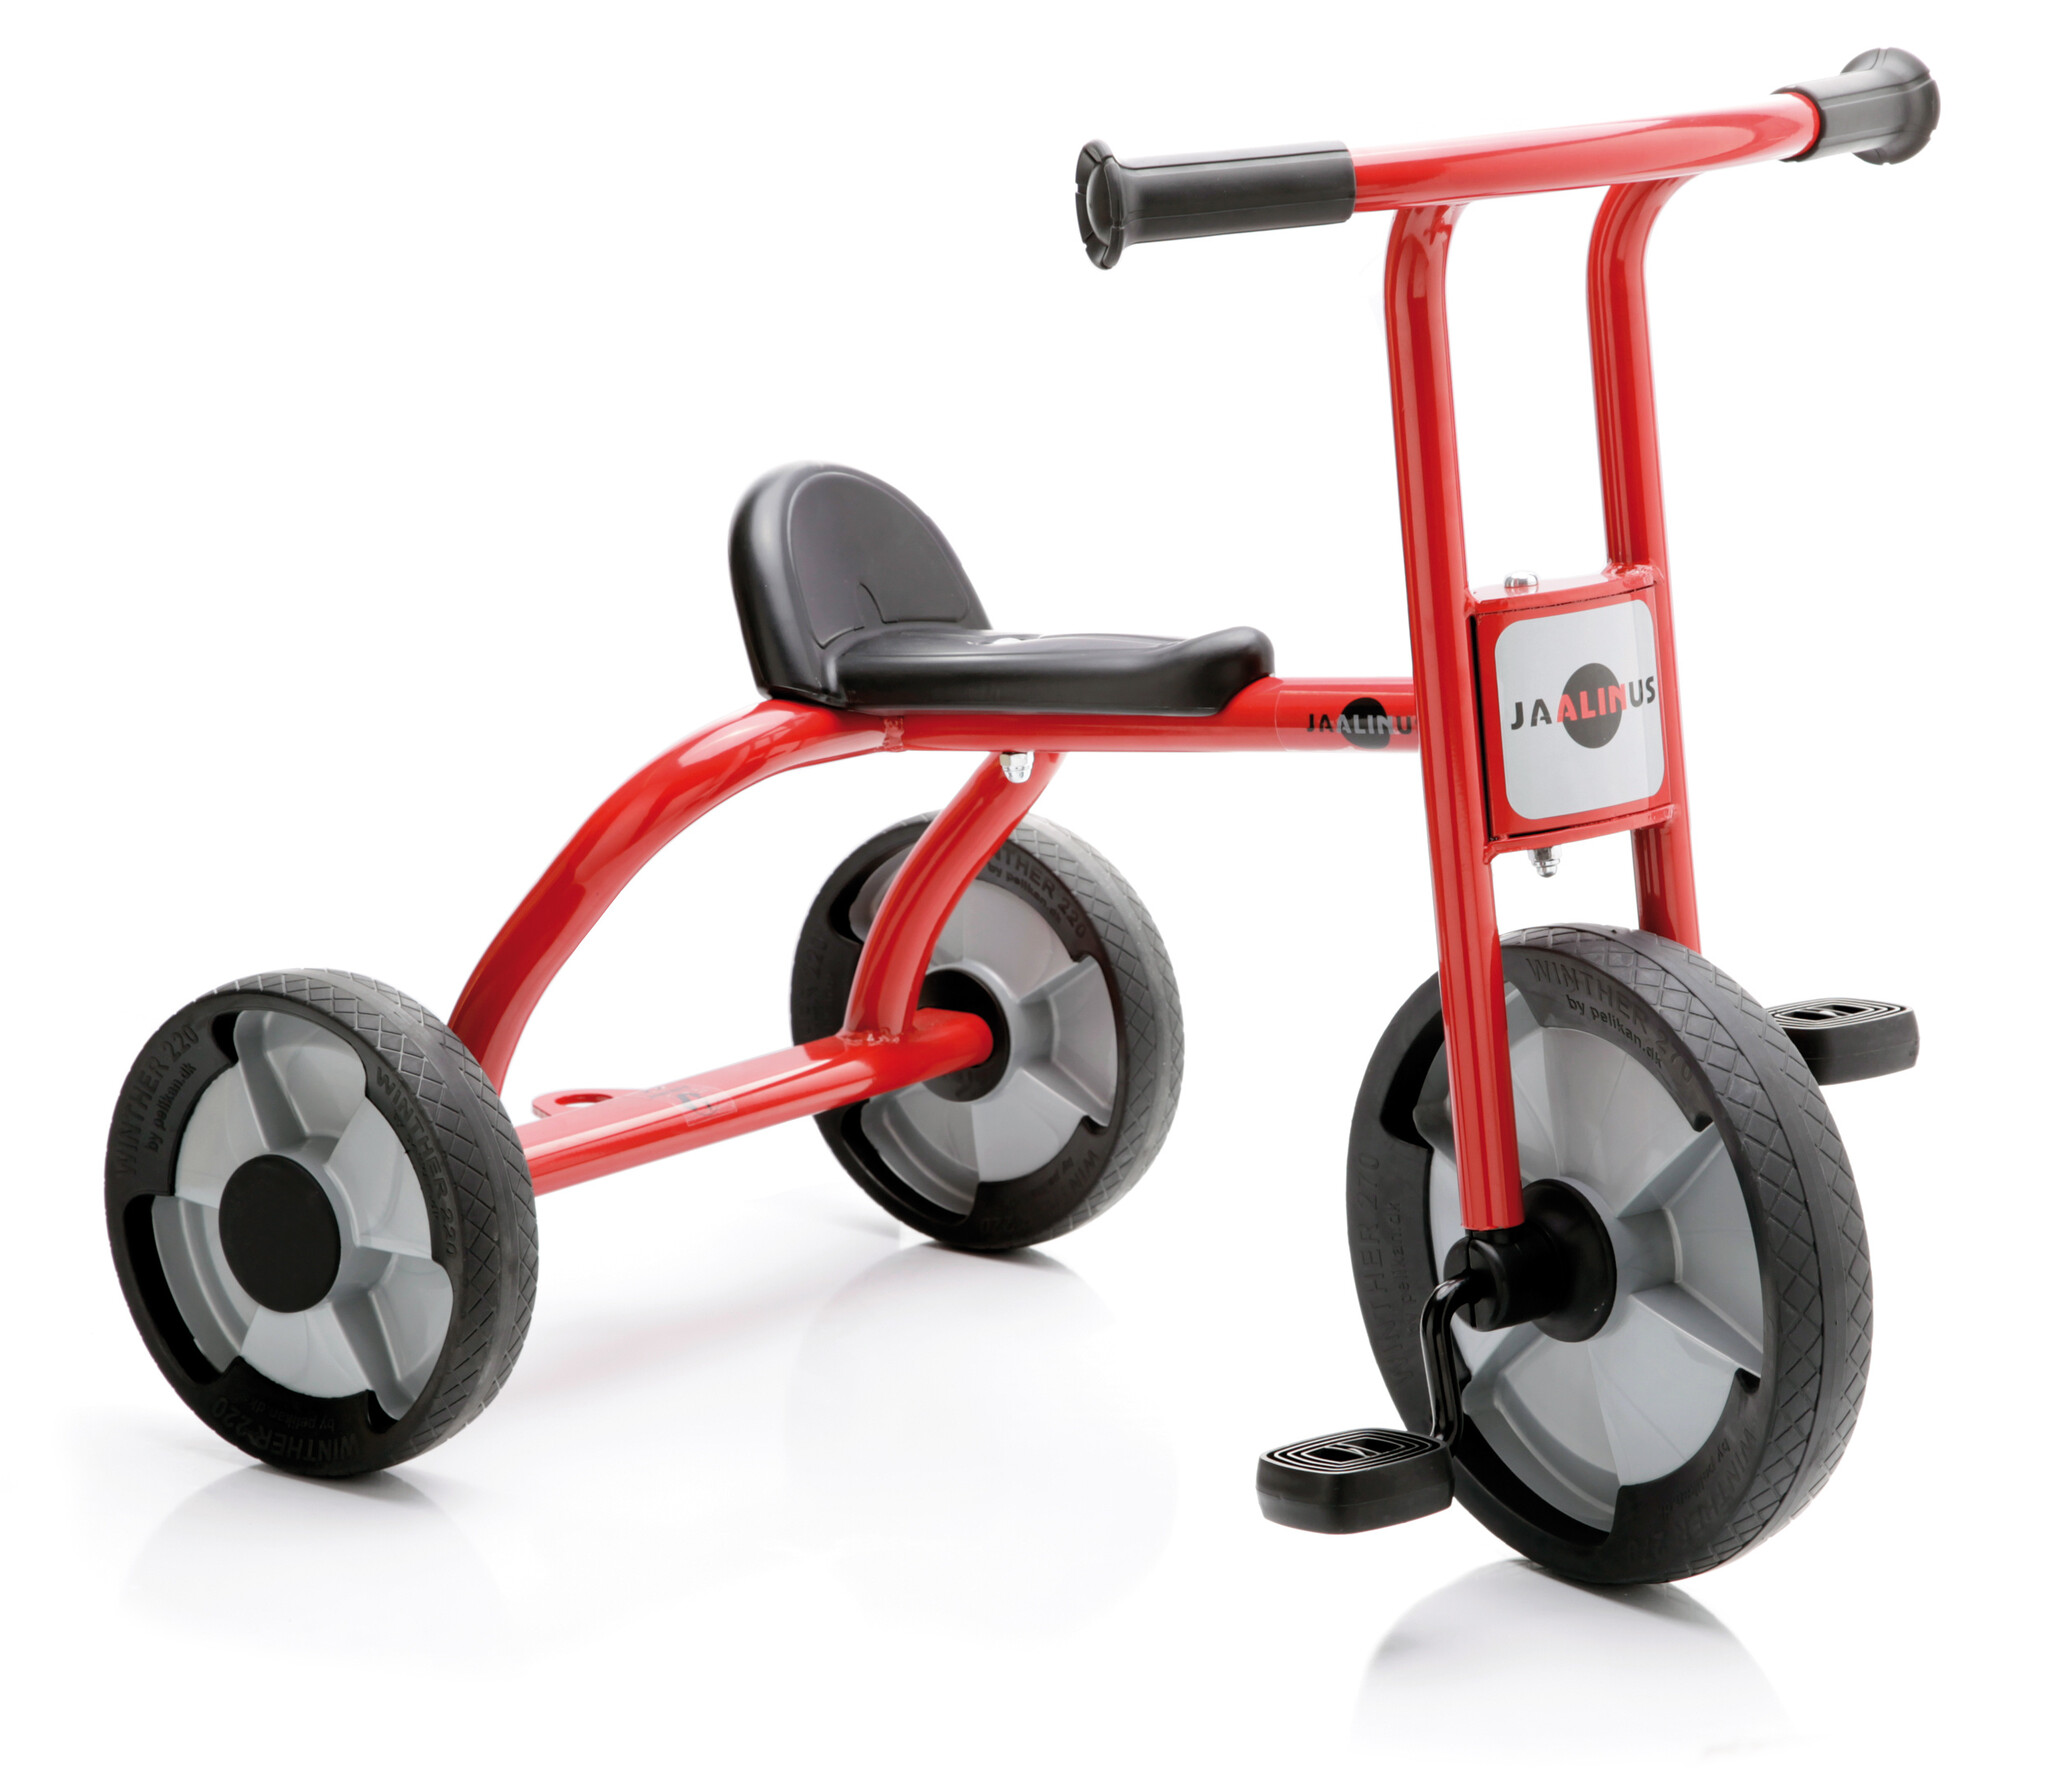 Tricycle enfant rouge - 2 à 3 ans